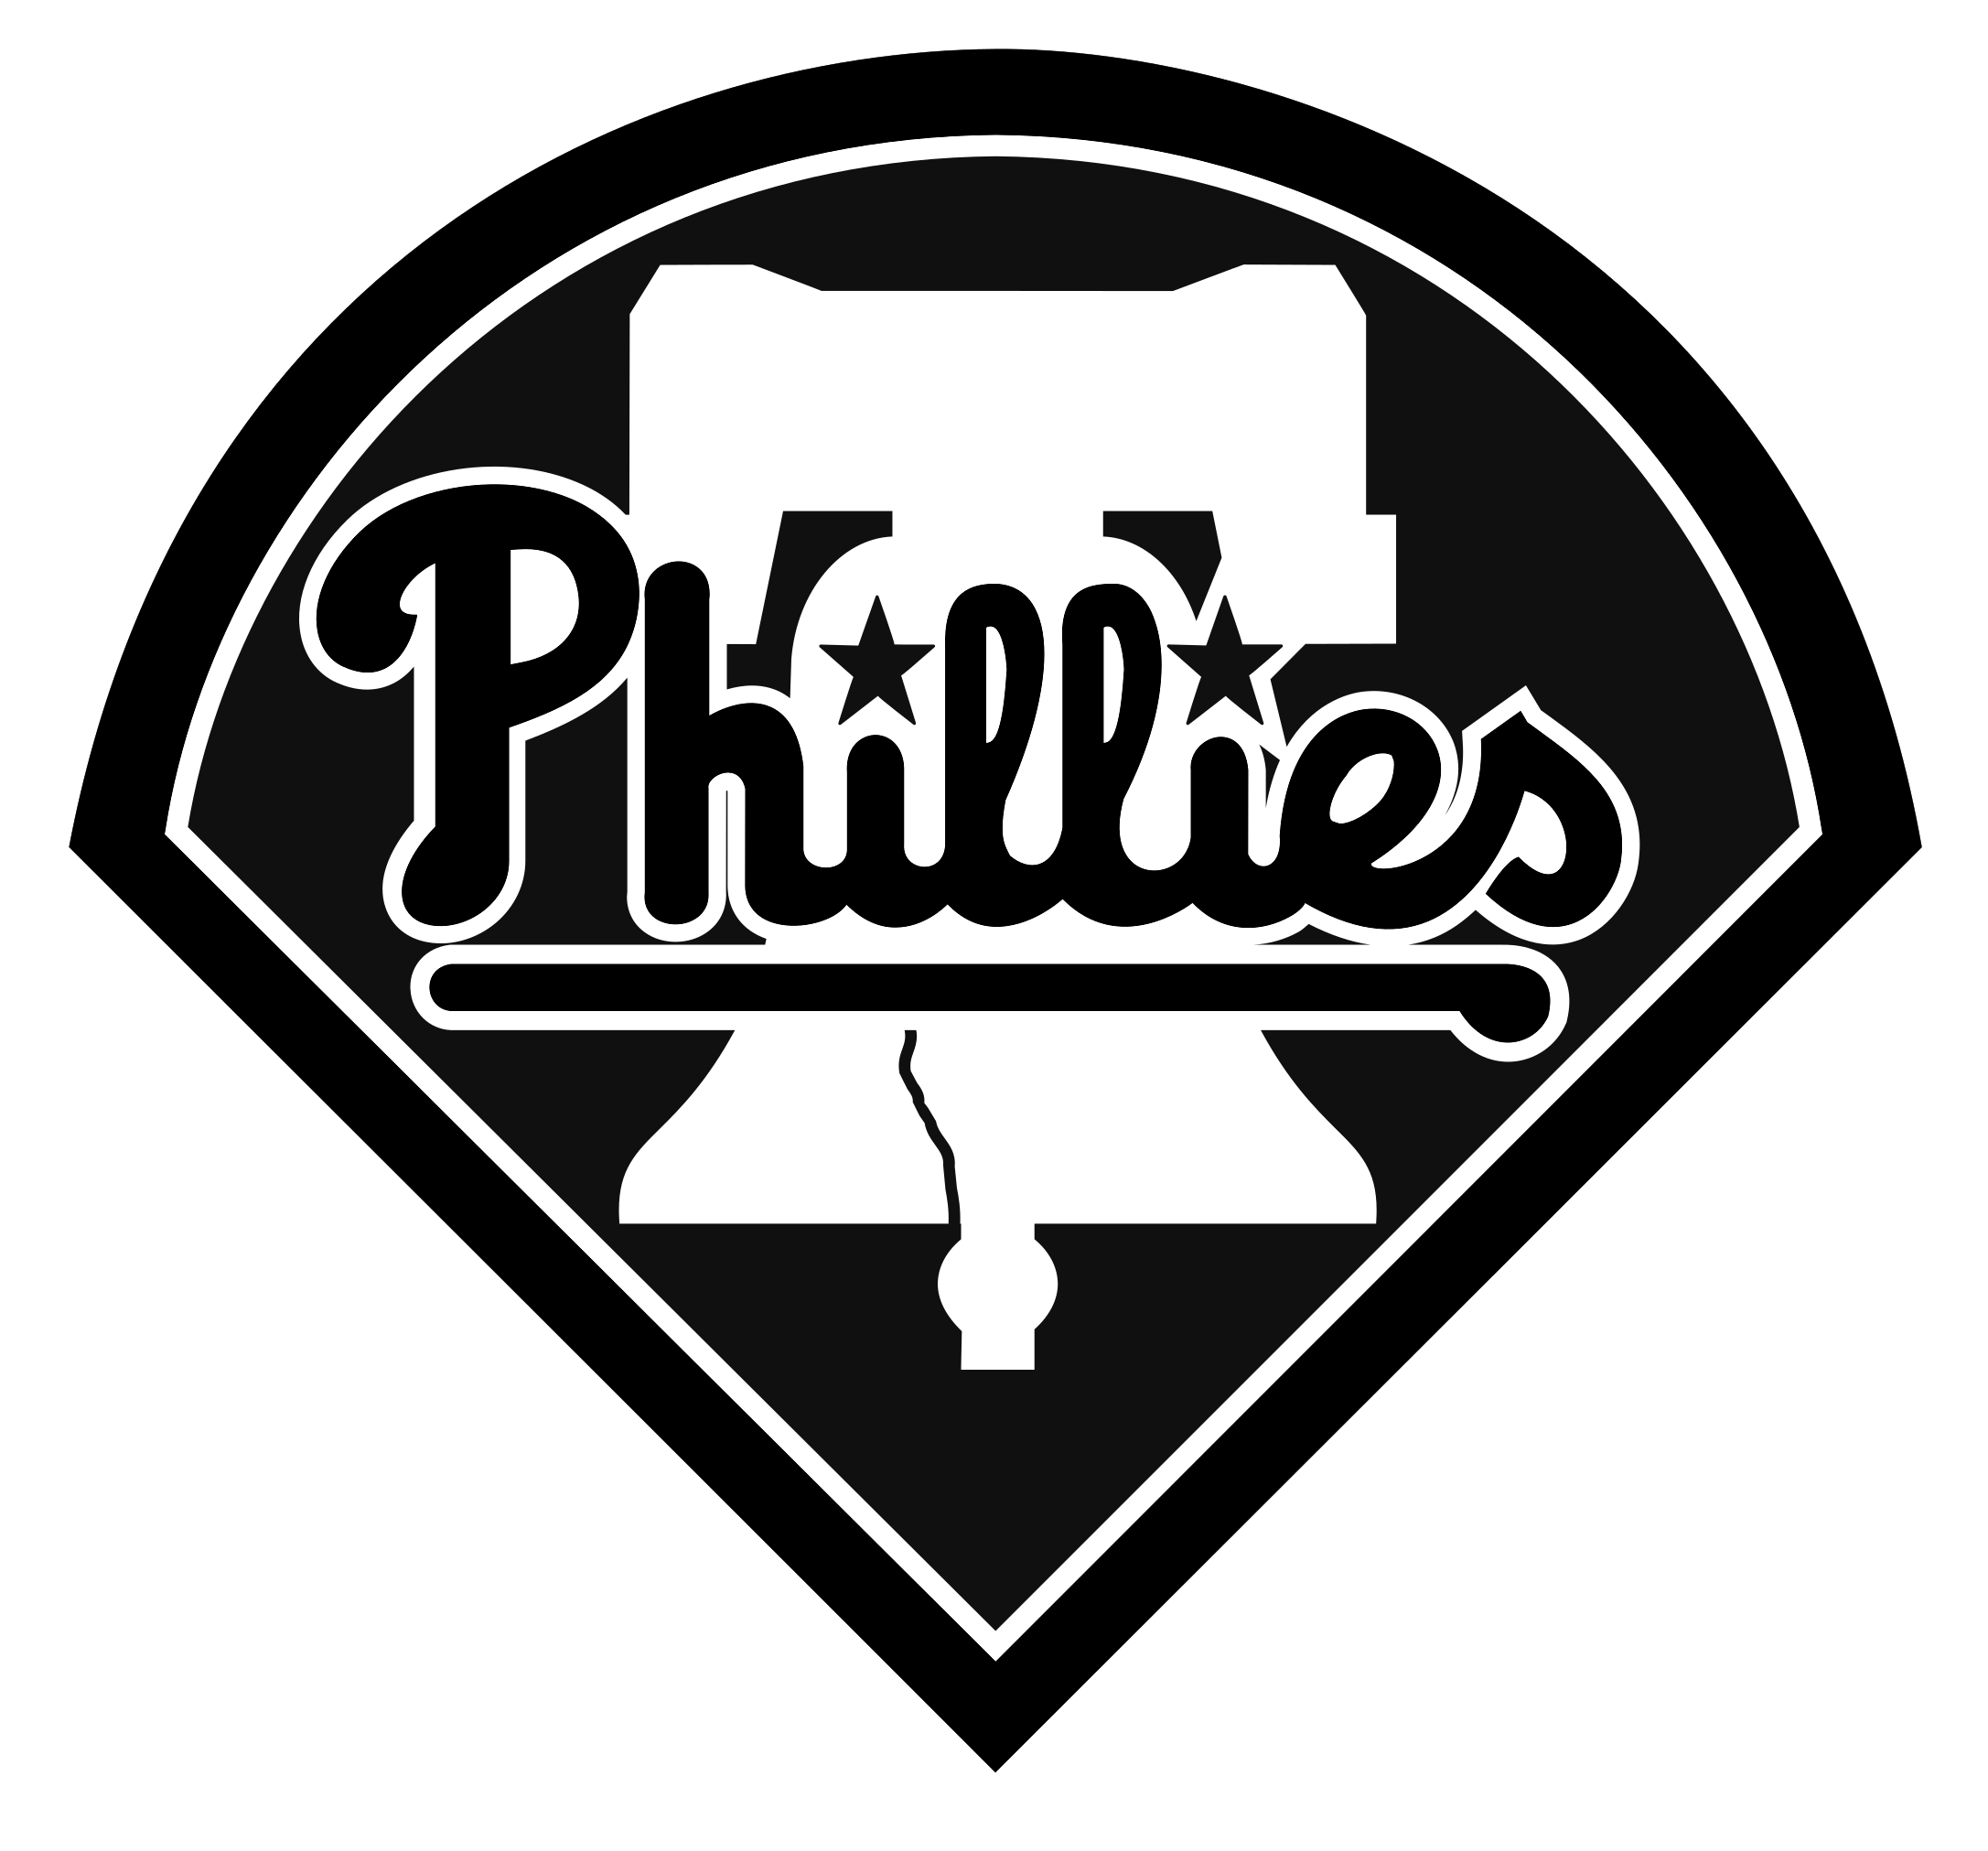 Philadelphia Phillies Logo Black And White - Philadelphia Phillies Logo Clipart (2400x2400), Png Download